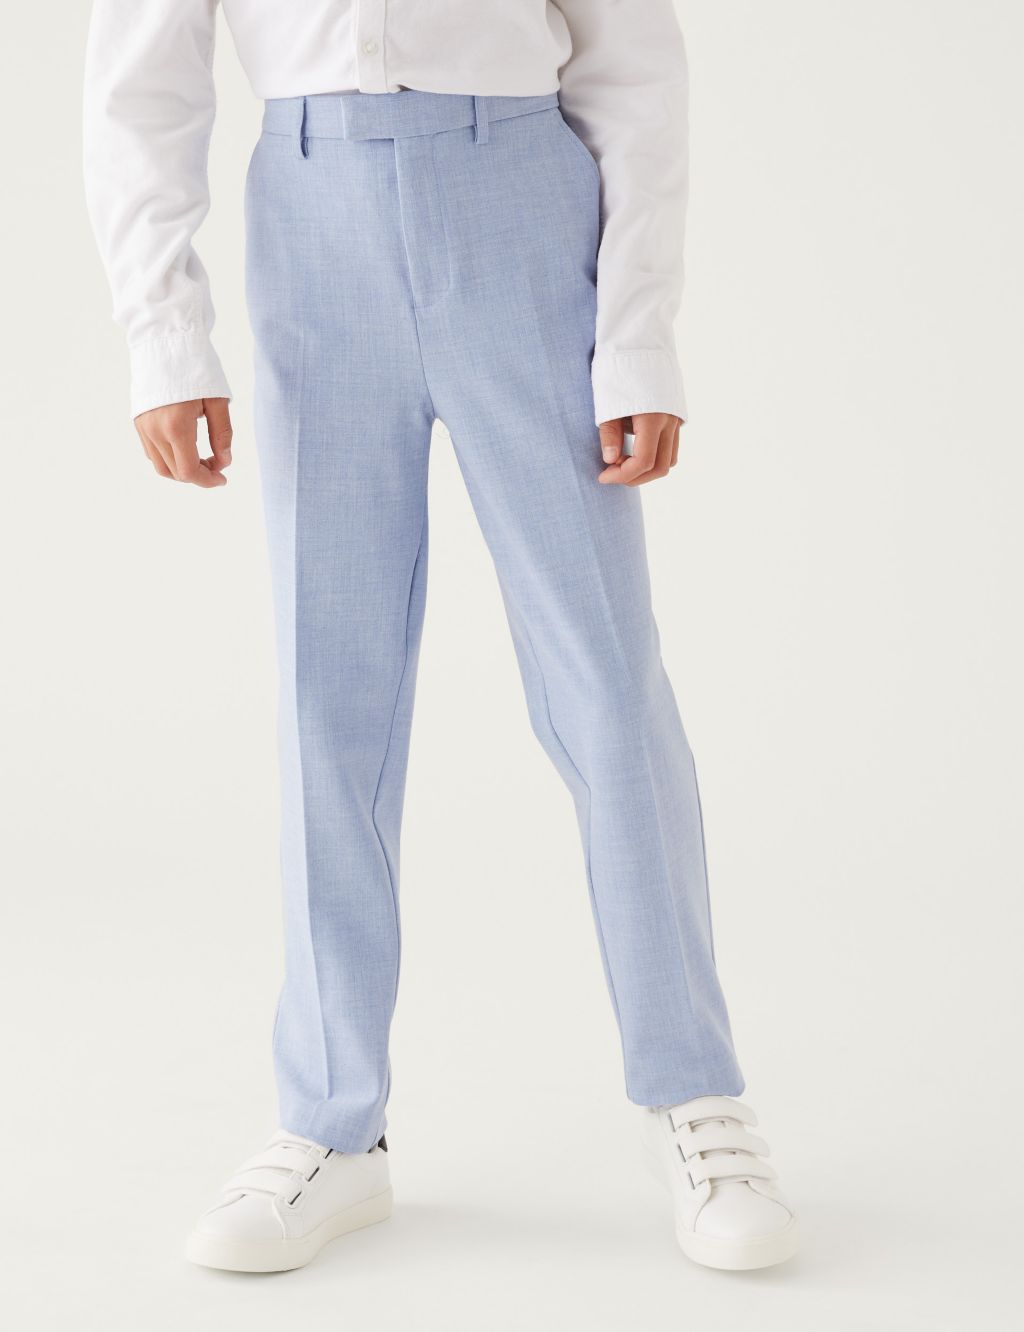 Mini Me Slim Leg Suit Trousers (6-16 Yrs) image 2